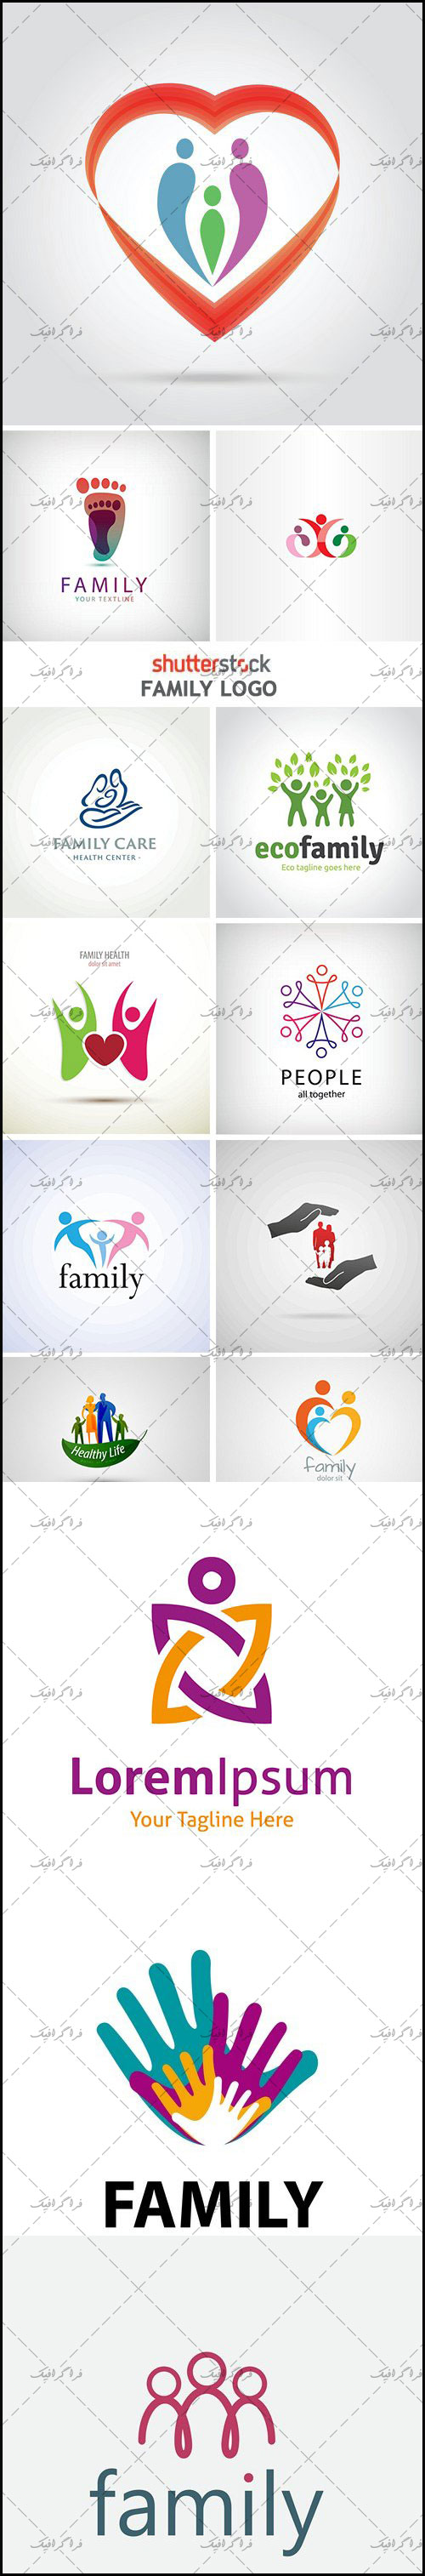 دانلود لوگو های خانواده - Family Logos